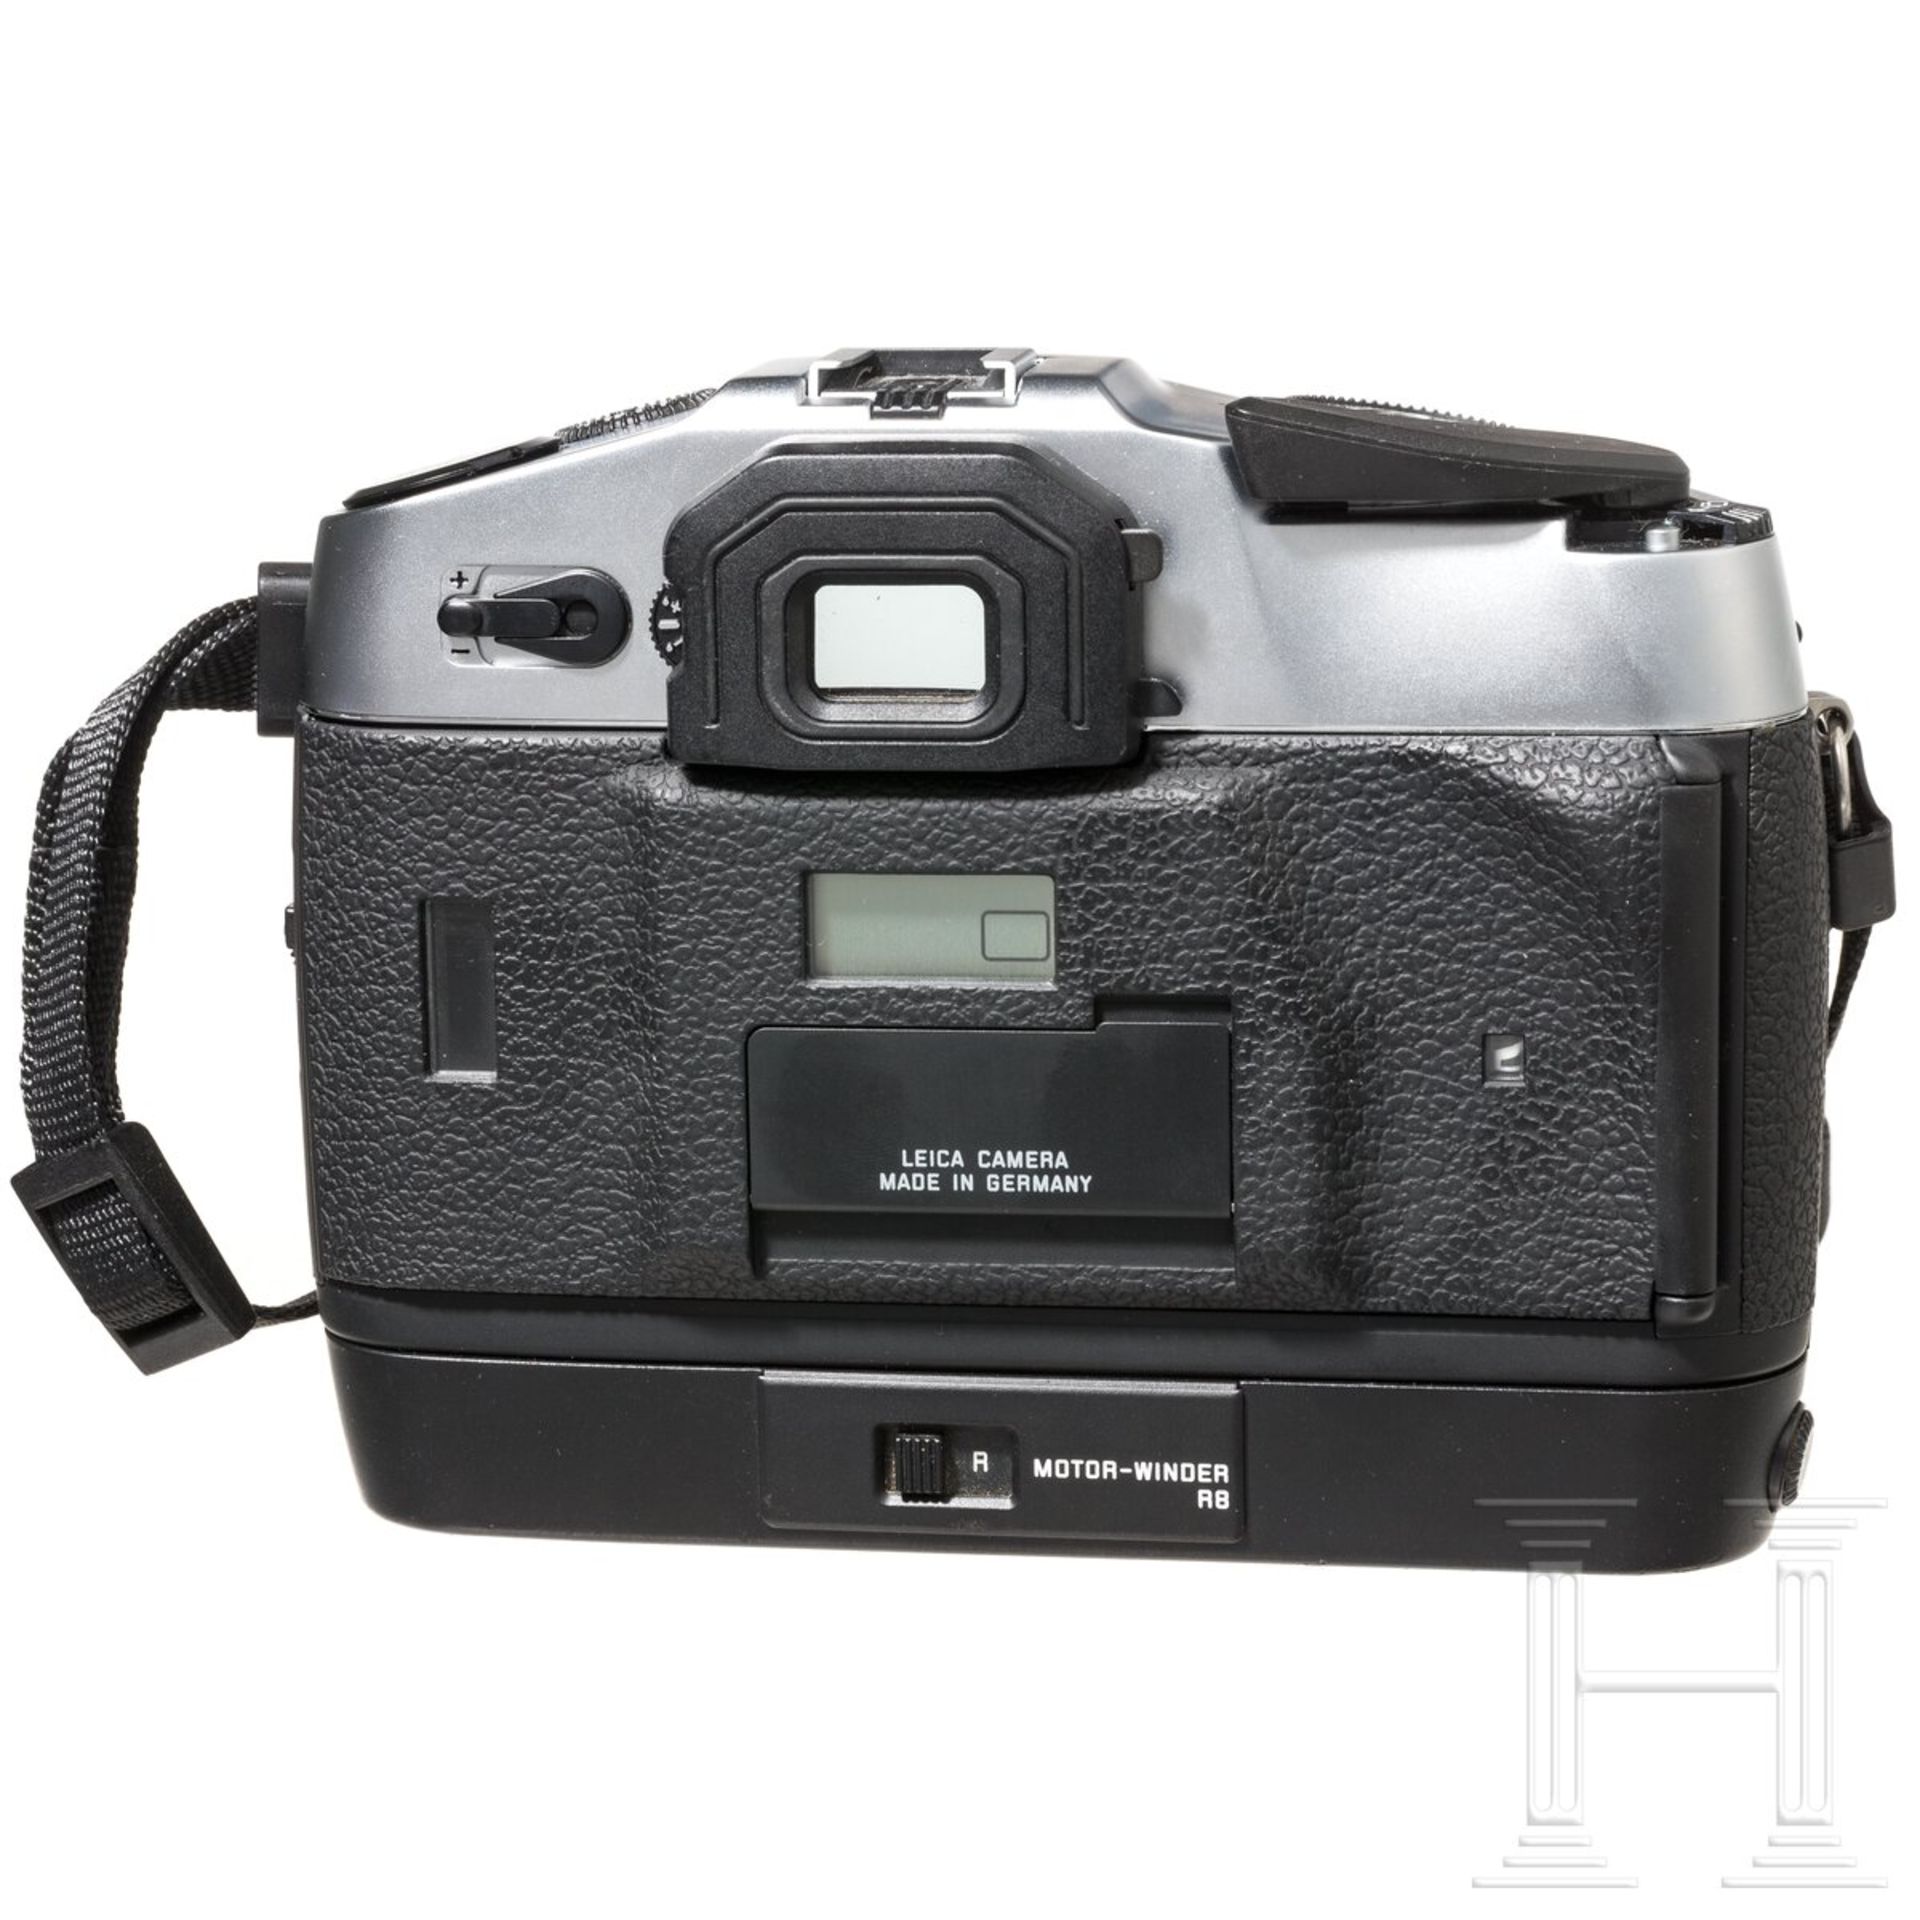 Kameragehäuse Leica R8, mit Motor-Winder, Tragekoffer - Bild 4 aus 6